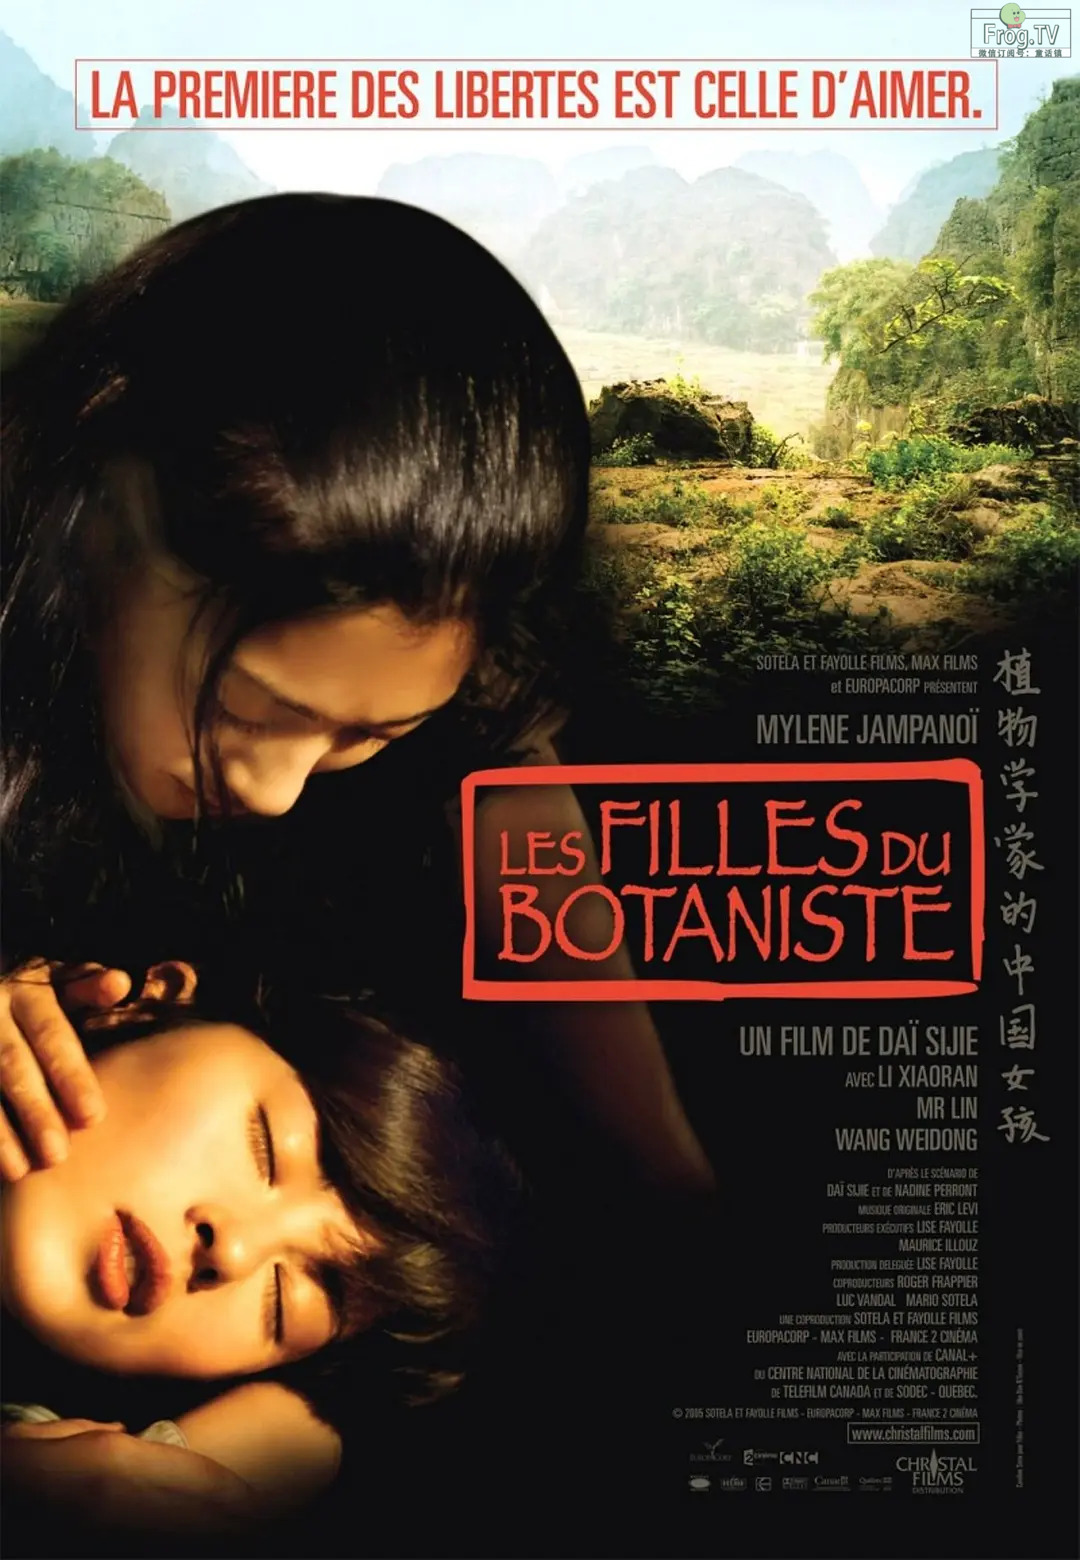 李小冉的另类电影·值得一看：植物学家的中国女孩 Les filles du botaniste (2006)